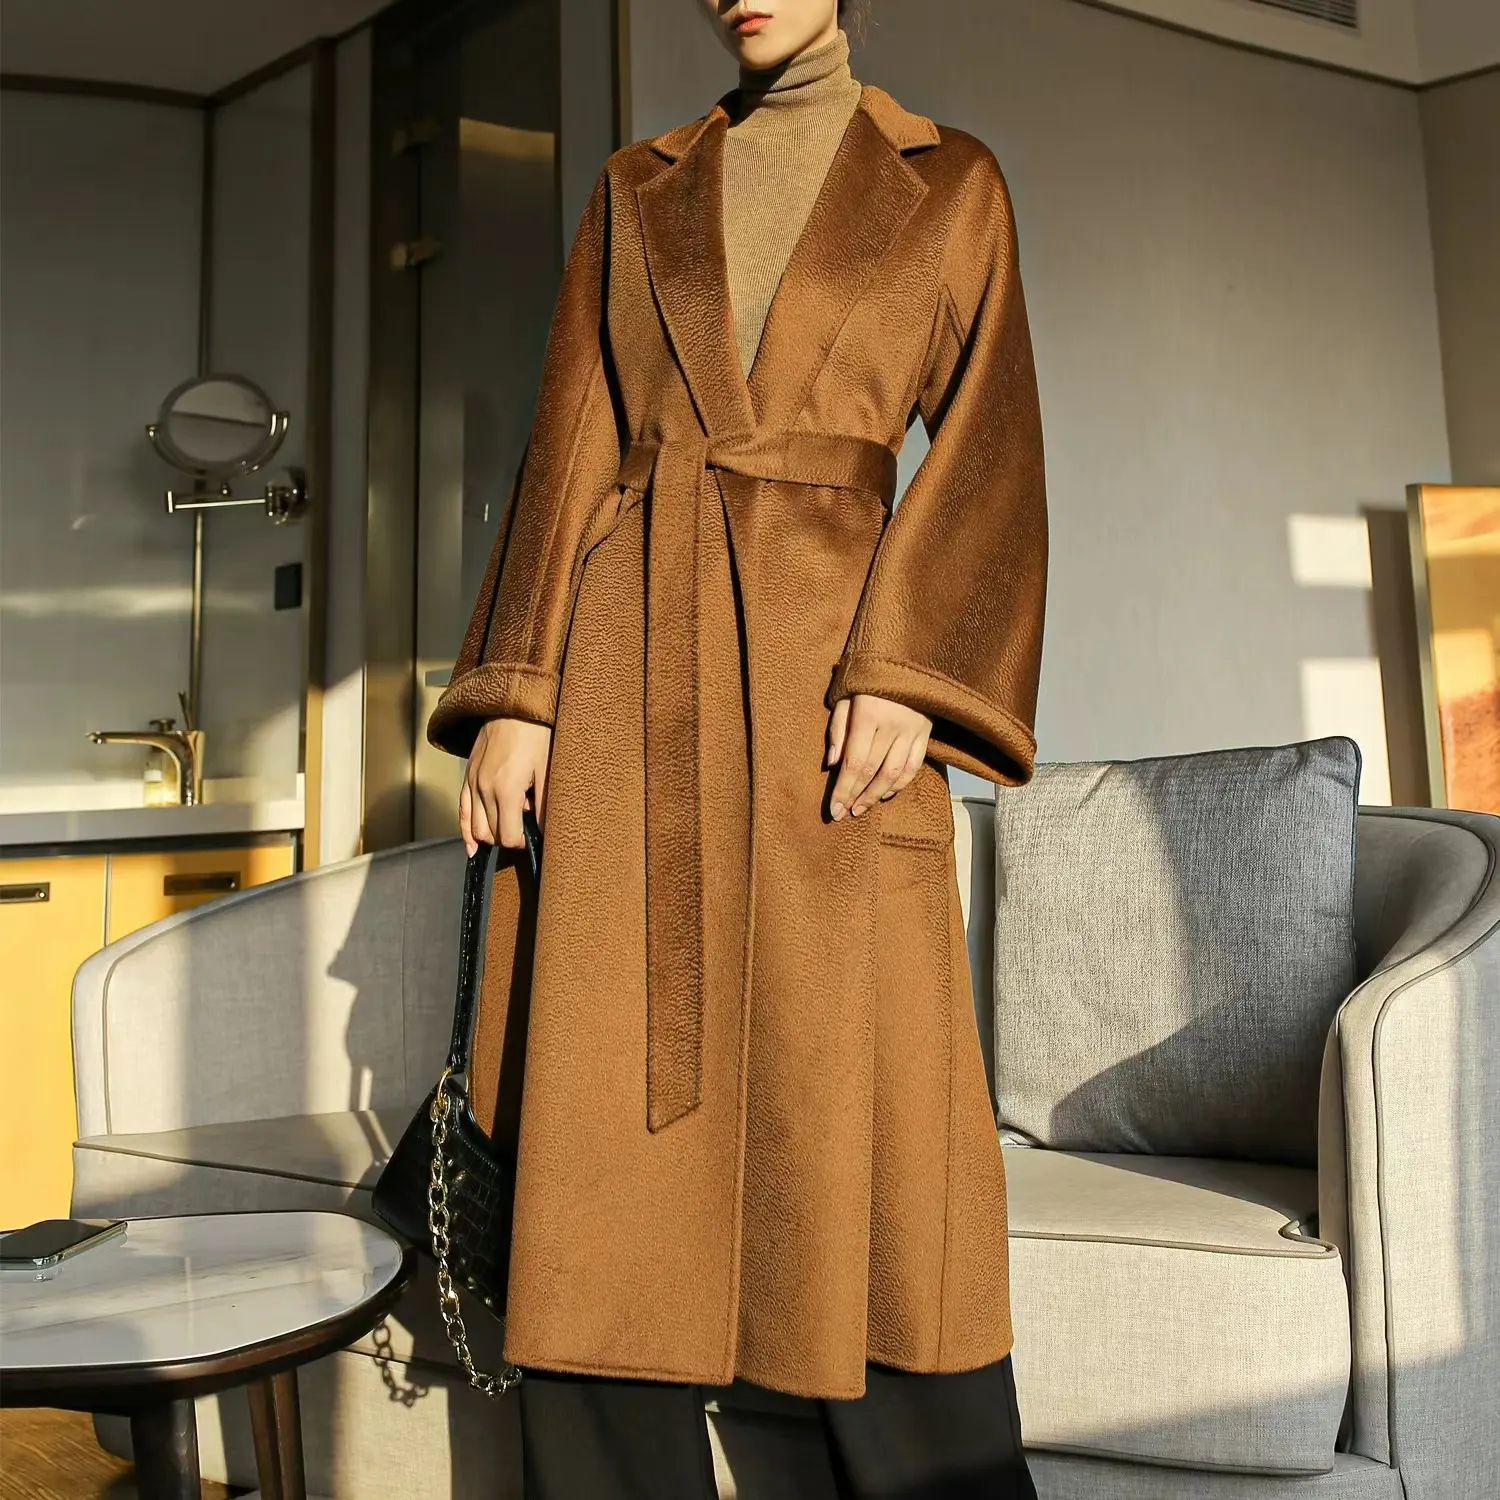 Yeni moda kış kadın sonbahar uzun yün ceket çift yüzlü uzun hakiki yün trençkot